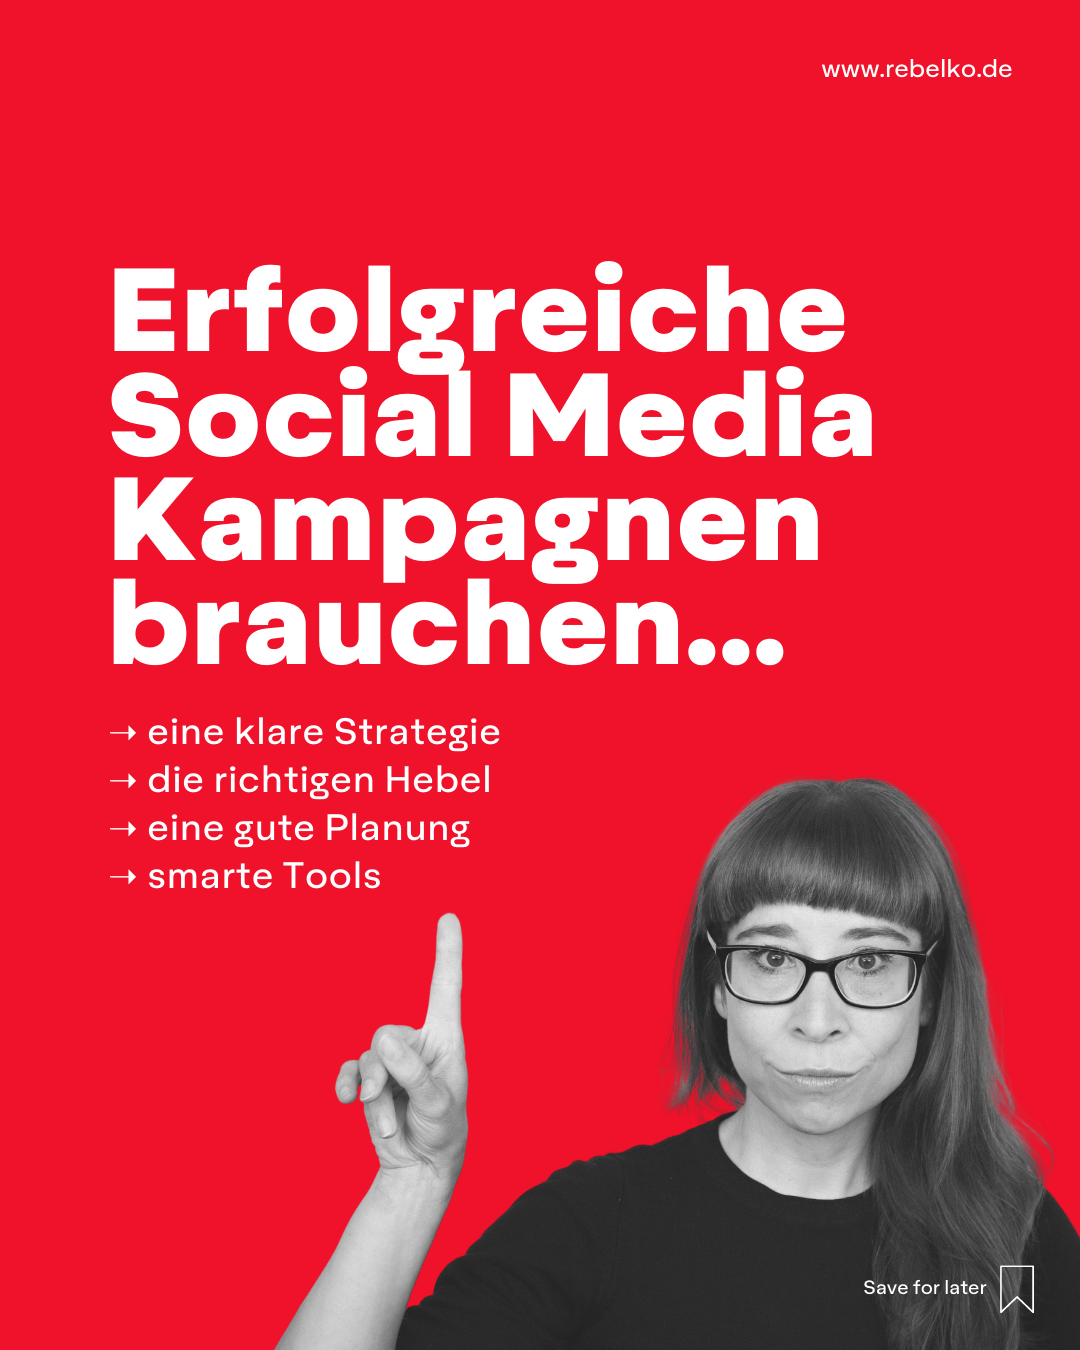 5 ideen fuer social media kampagen REBELKO Agentur Aachen Marketing  Design Kreativ Strategie Social Media Konzeption Beratung Creatives Digital 08